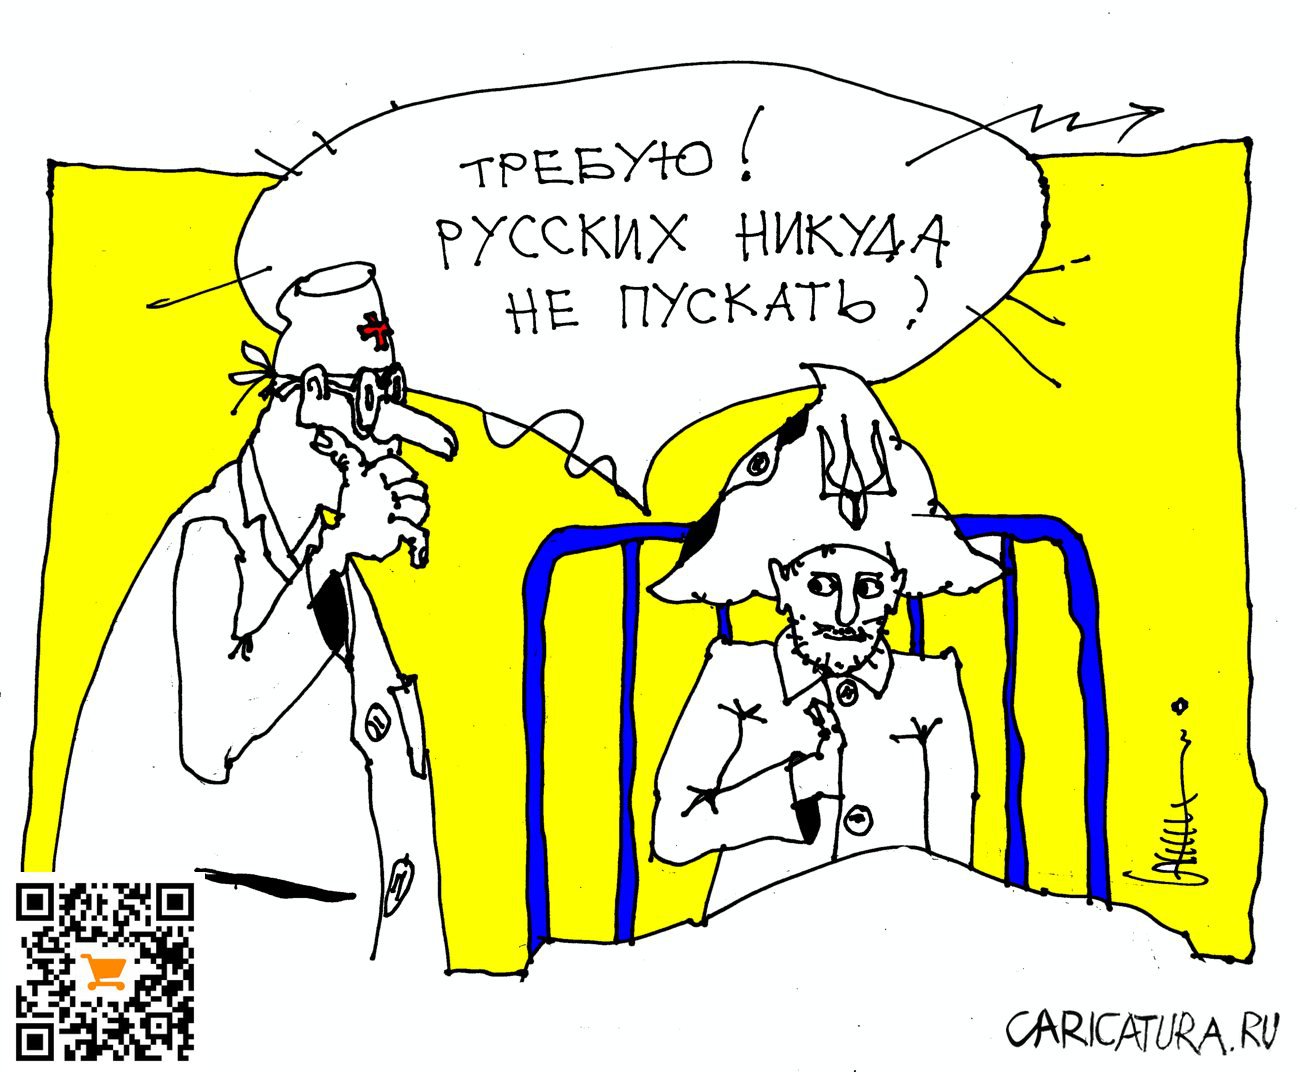 Карикатура "Жесткое требование", Юрий Санников